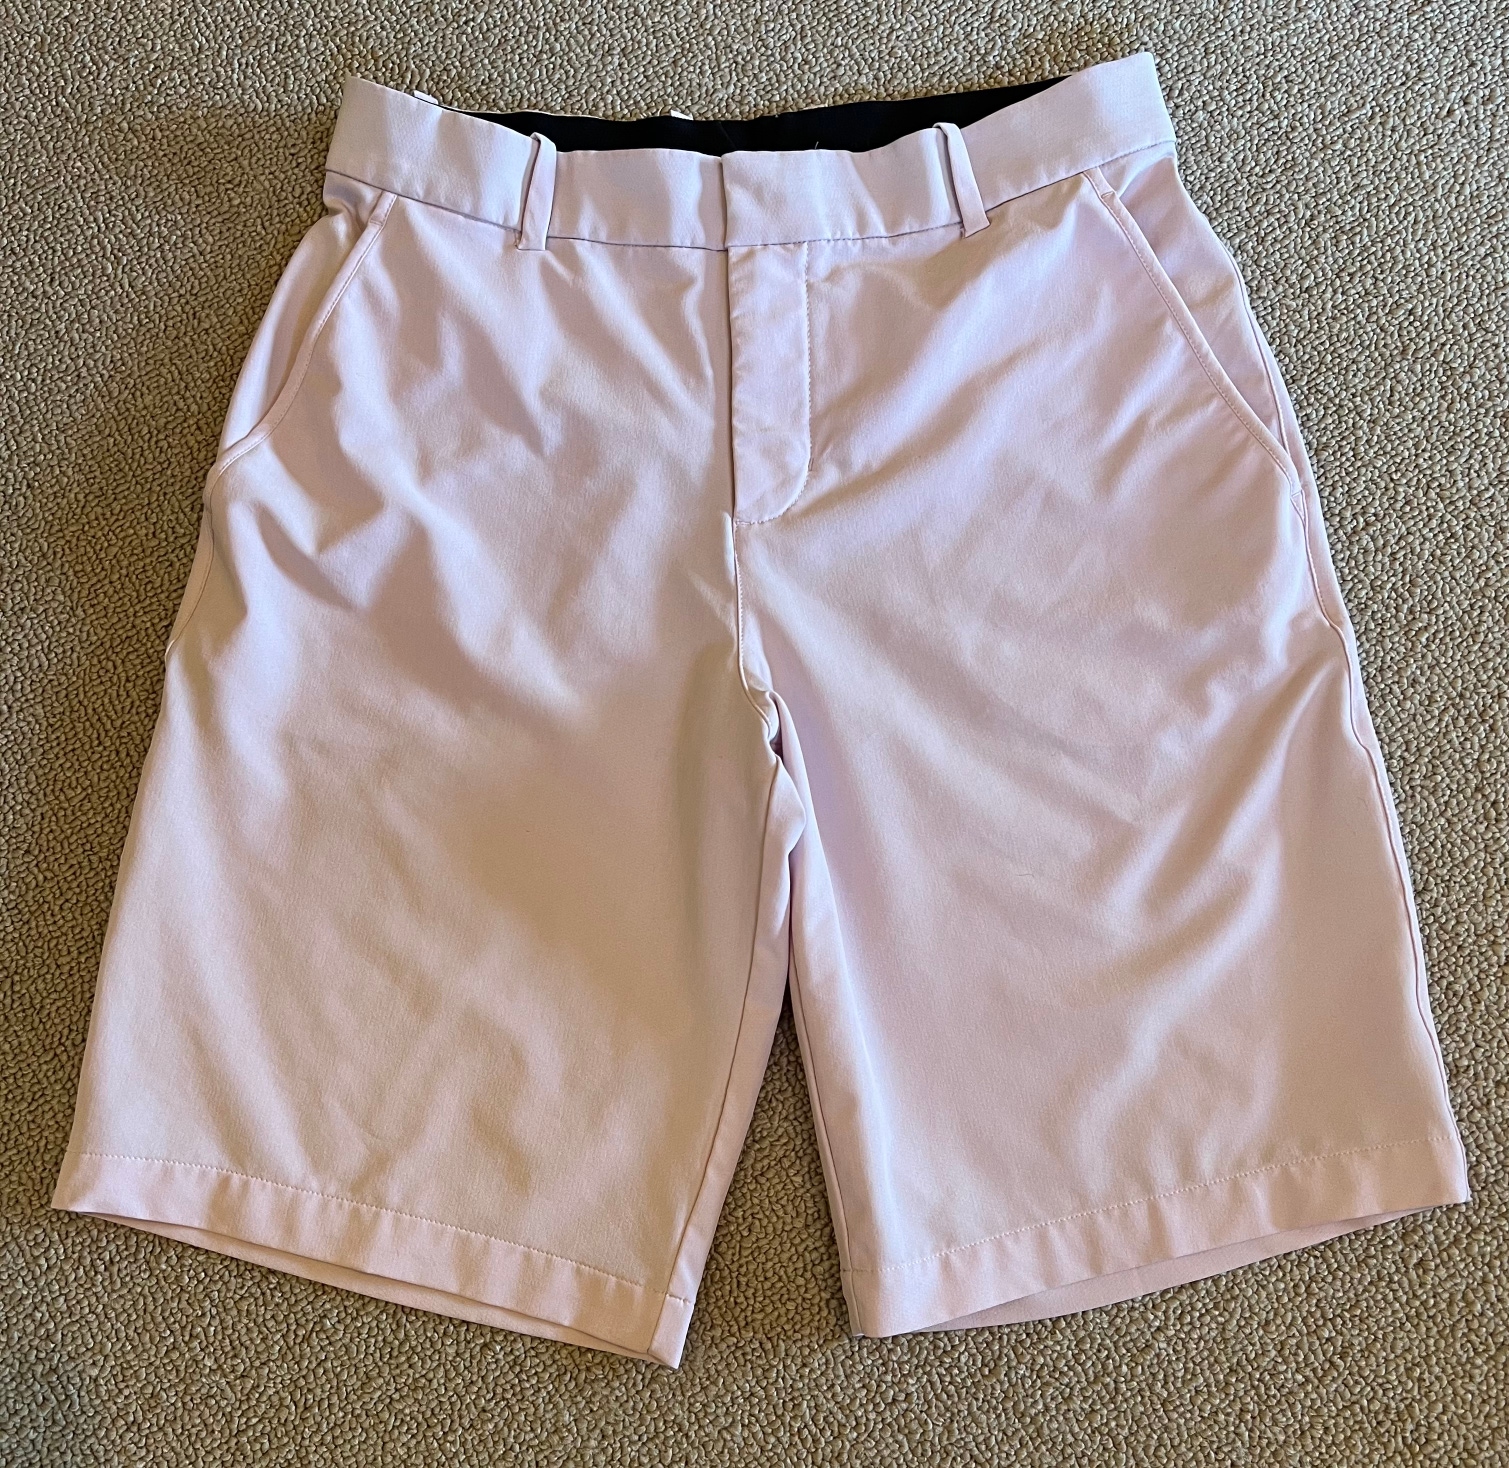 Nike Golf Shorts Pink Size 30 Men's